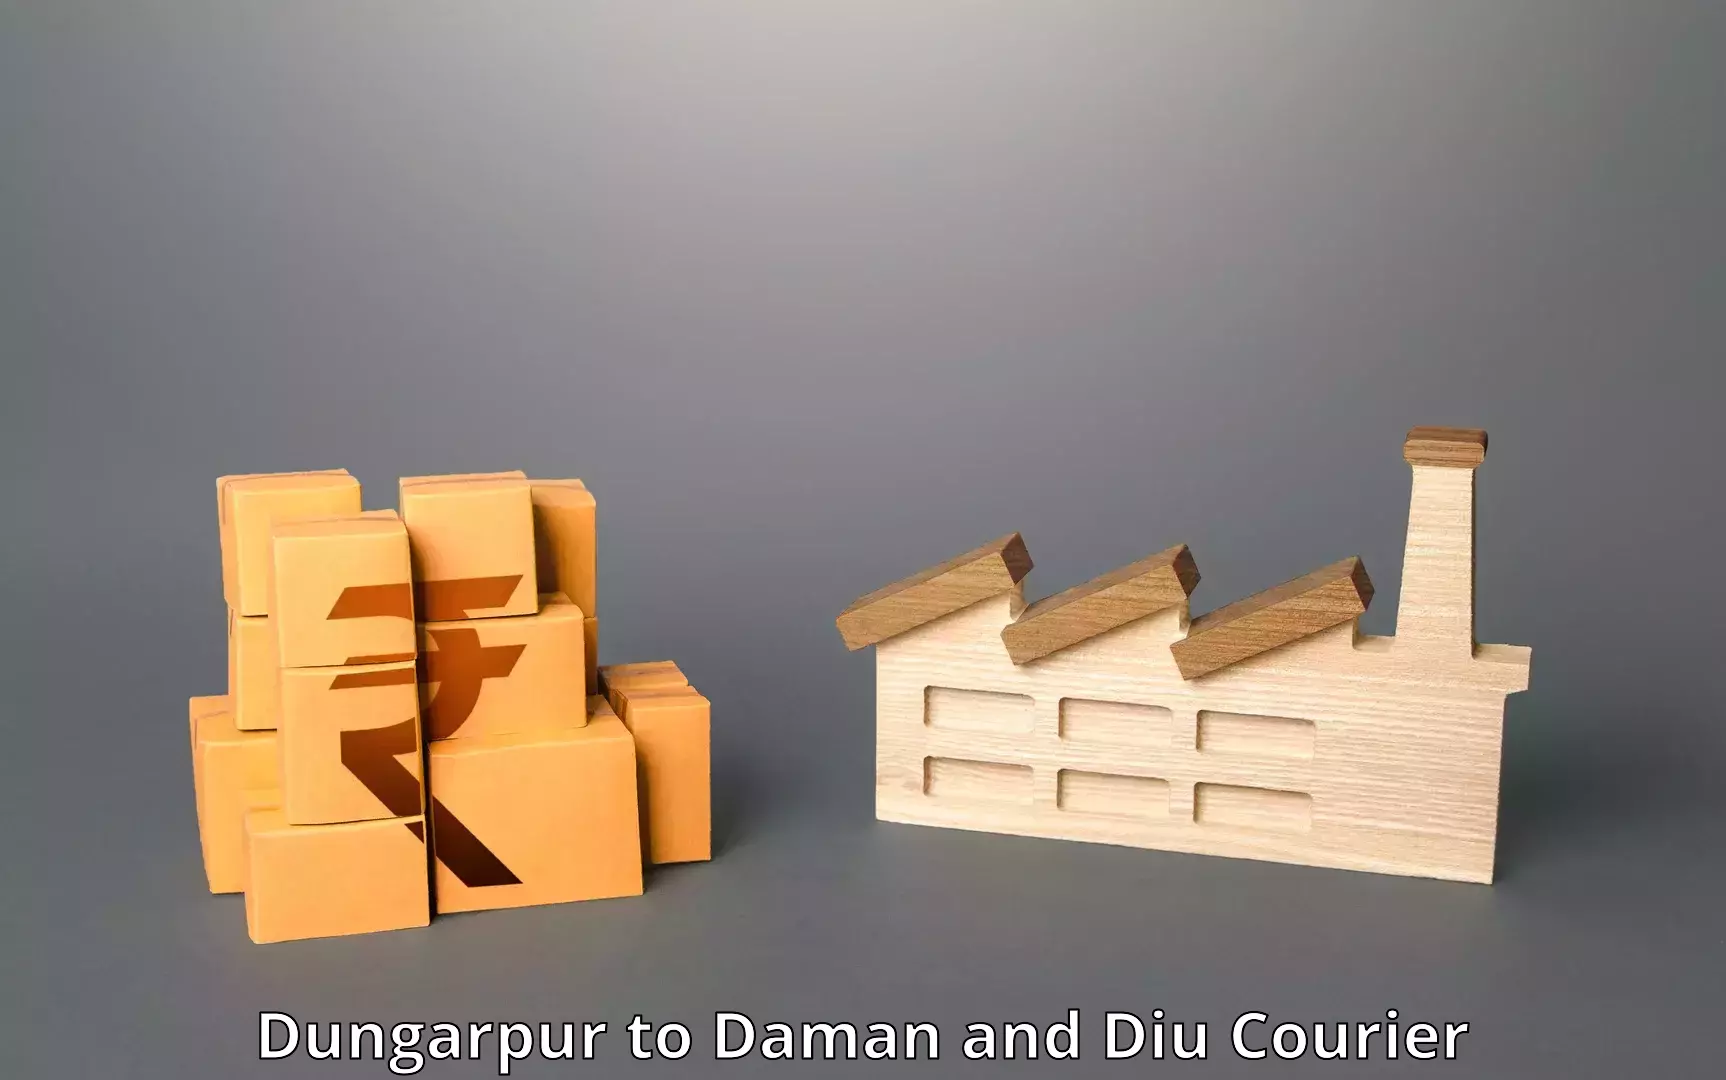 International logistics in Dungarpur to Daman and Diu